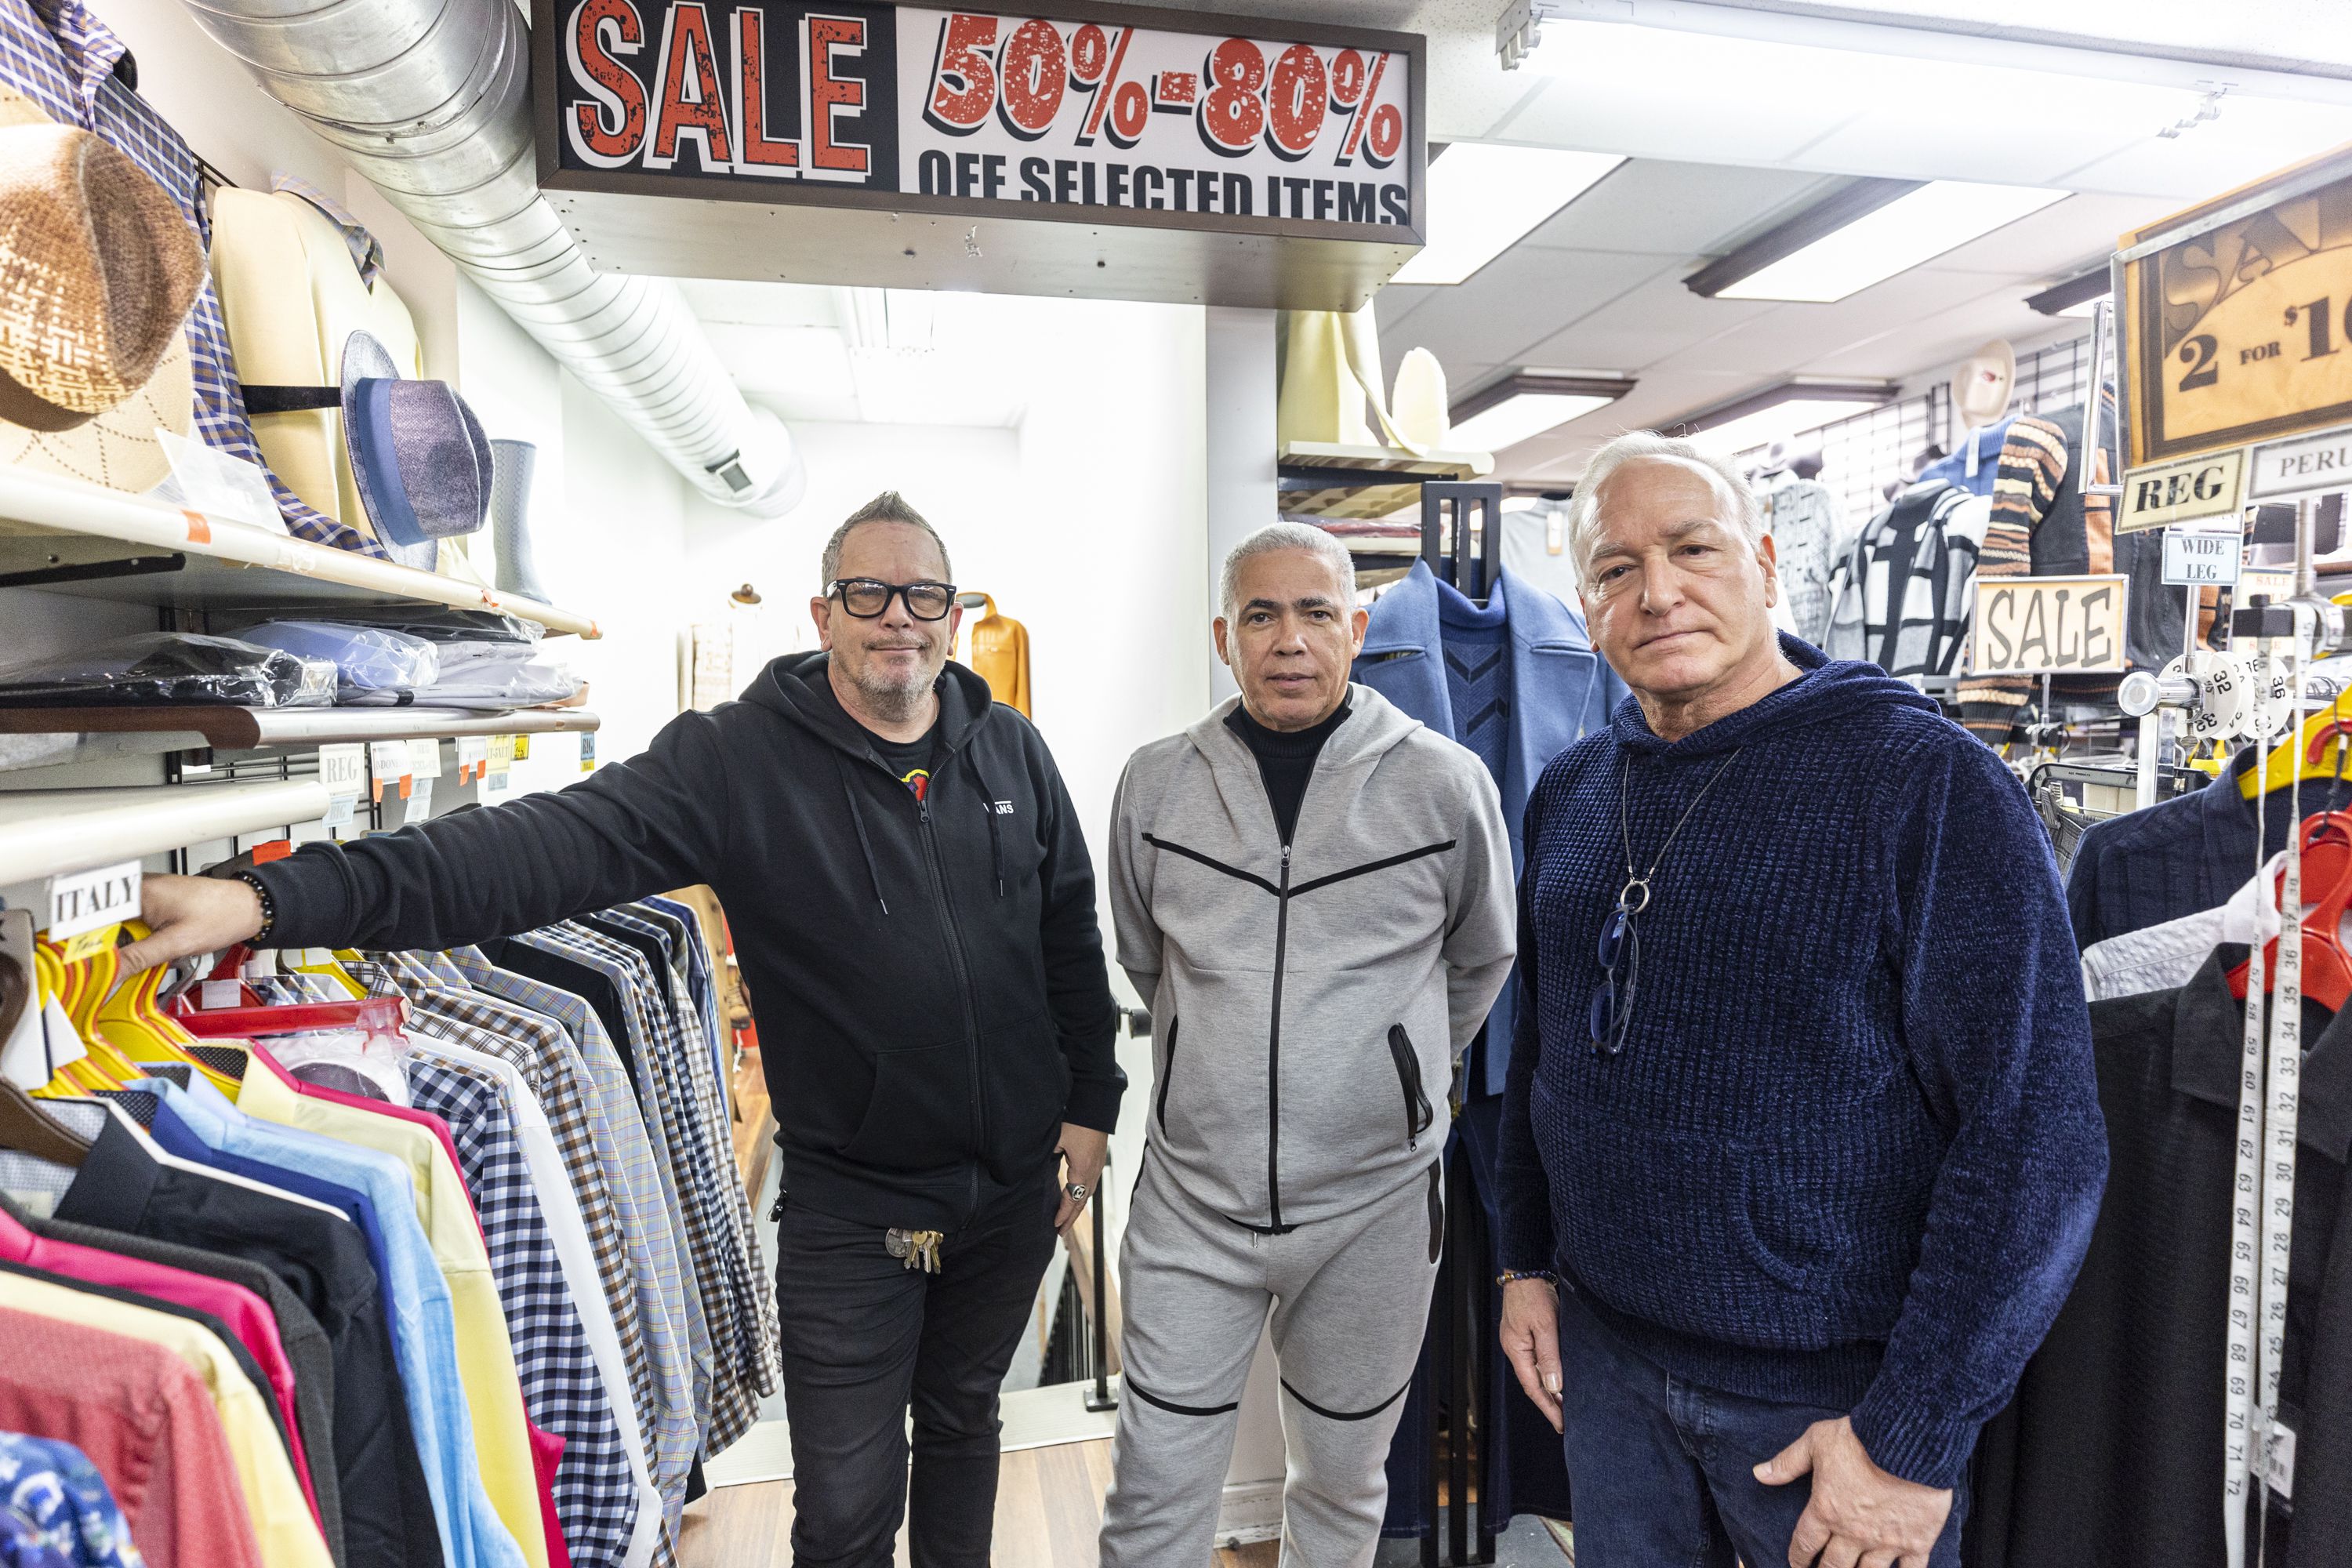 Shop Men's Clearance Suit Separates